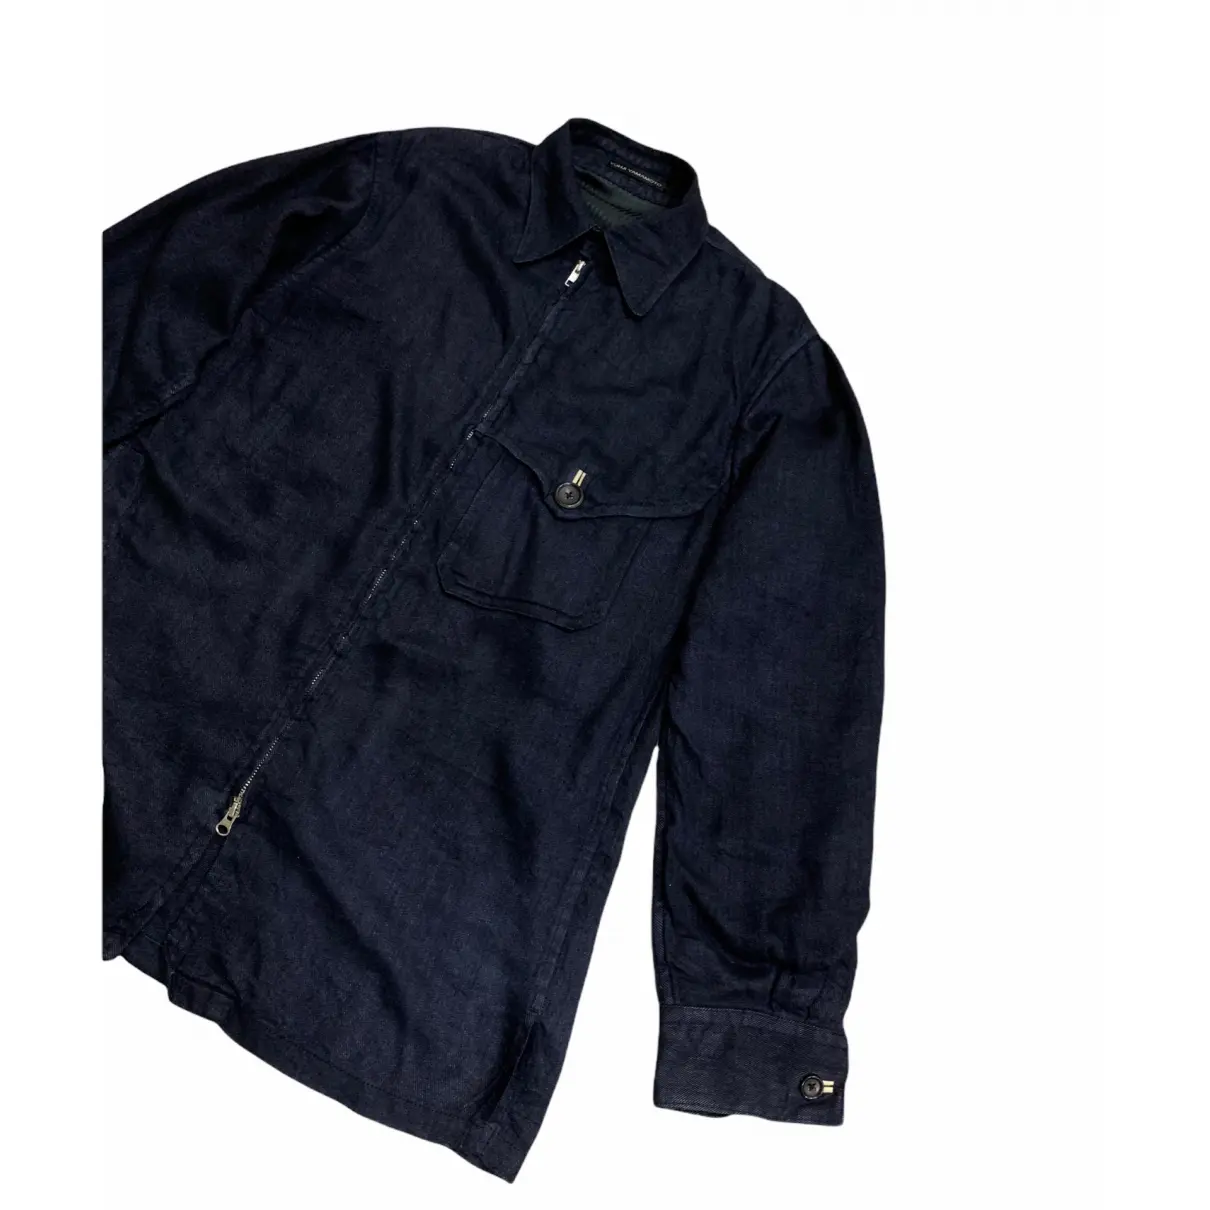 Buy Y's Linen jacket online